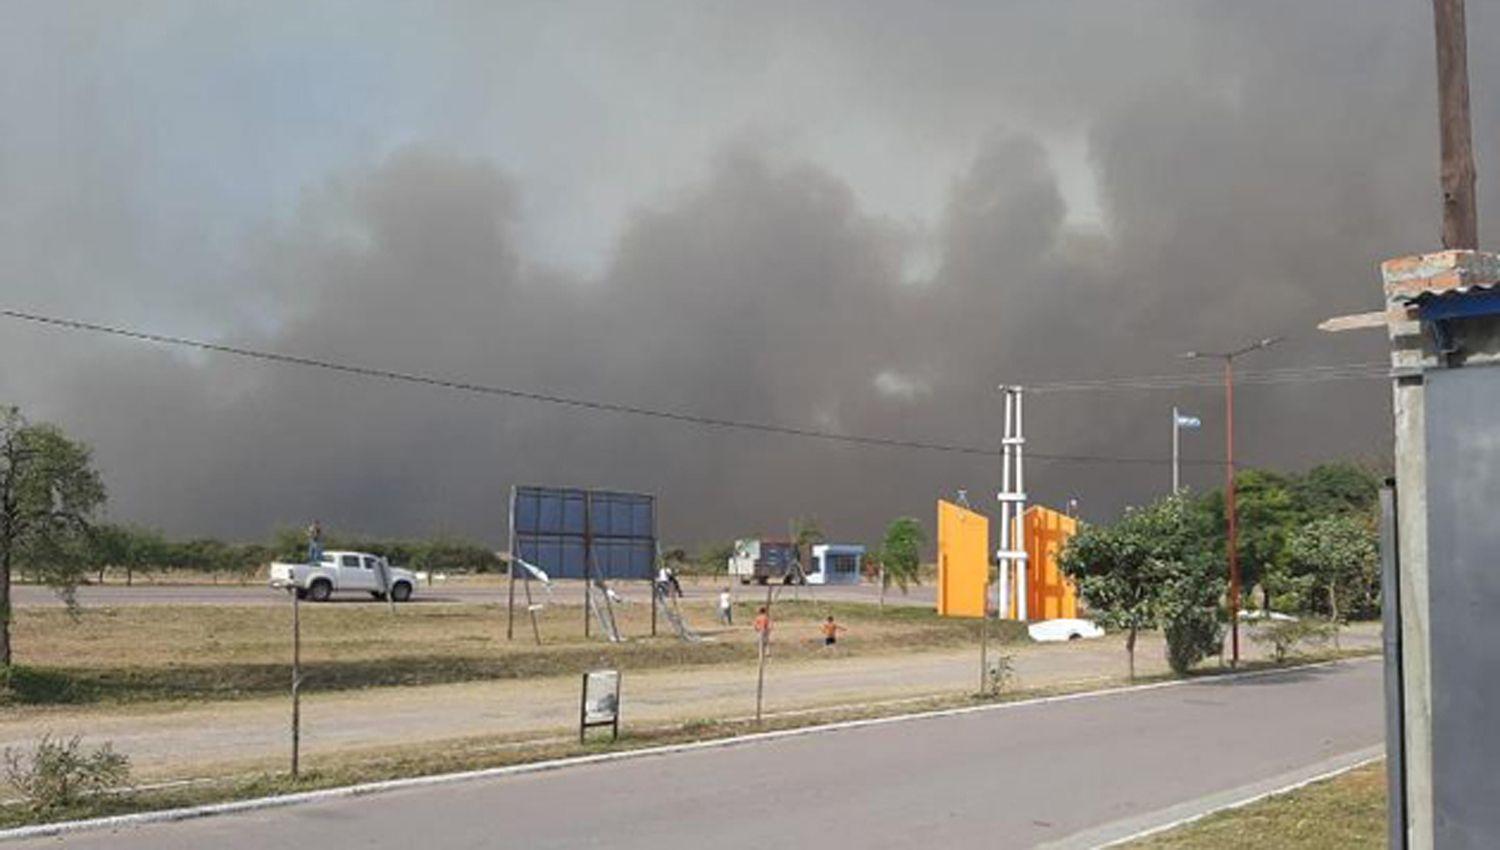 Las llamas llegaron ayer a Roversi y la gente reaccionó con trabajo
Cedieron m�quinas y avionetas